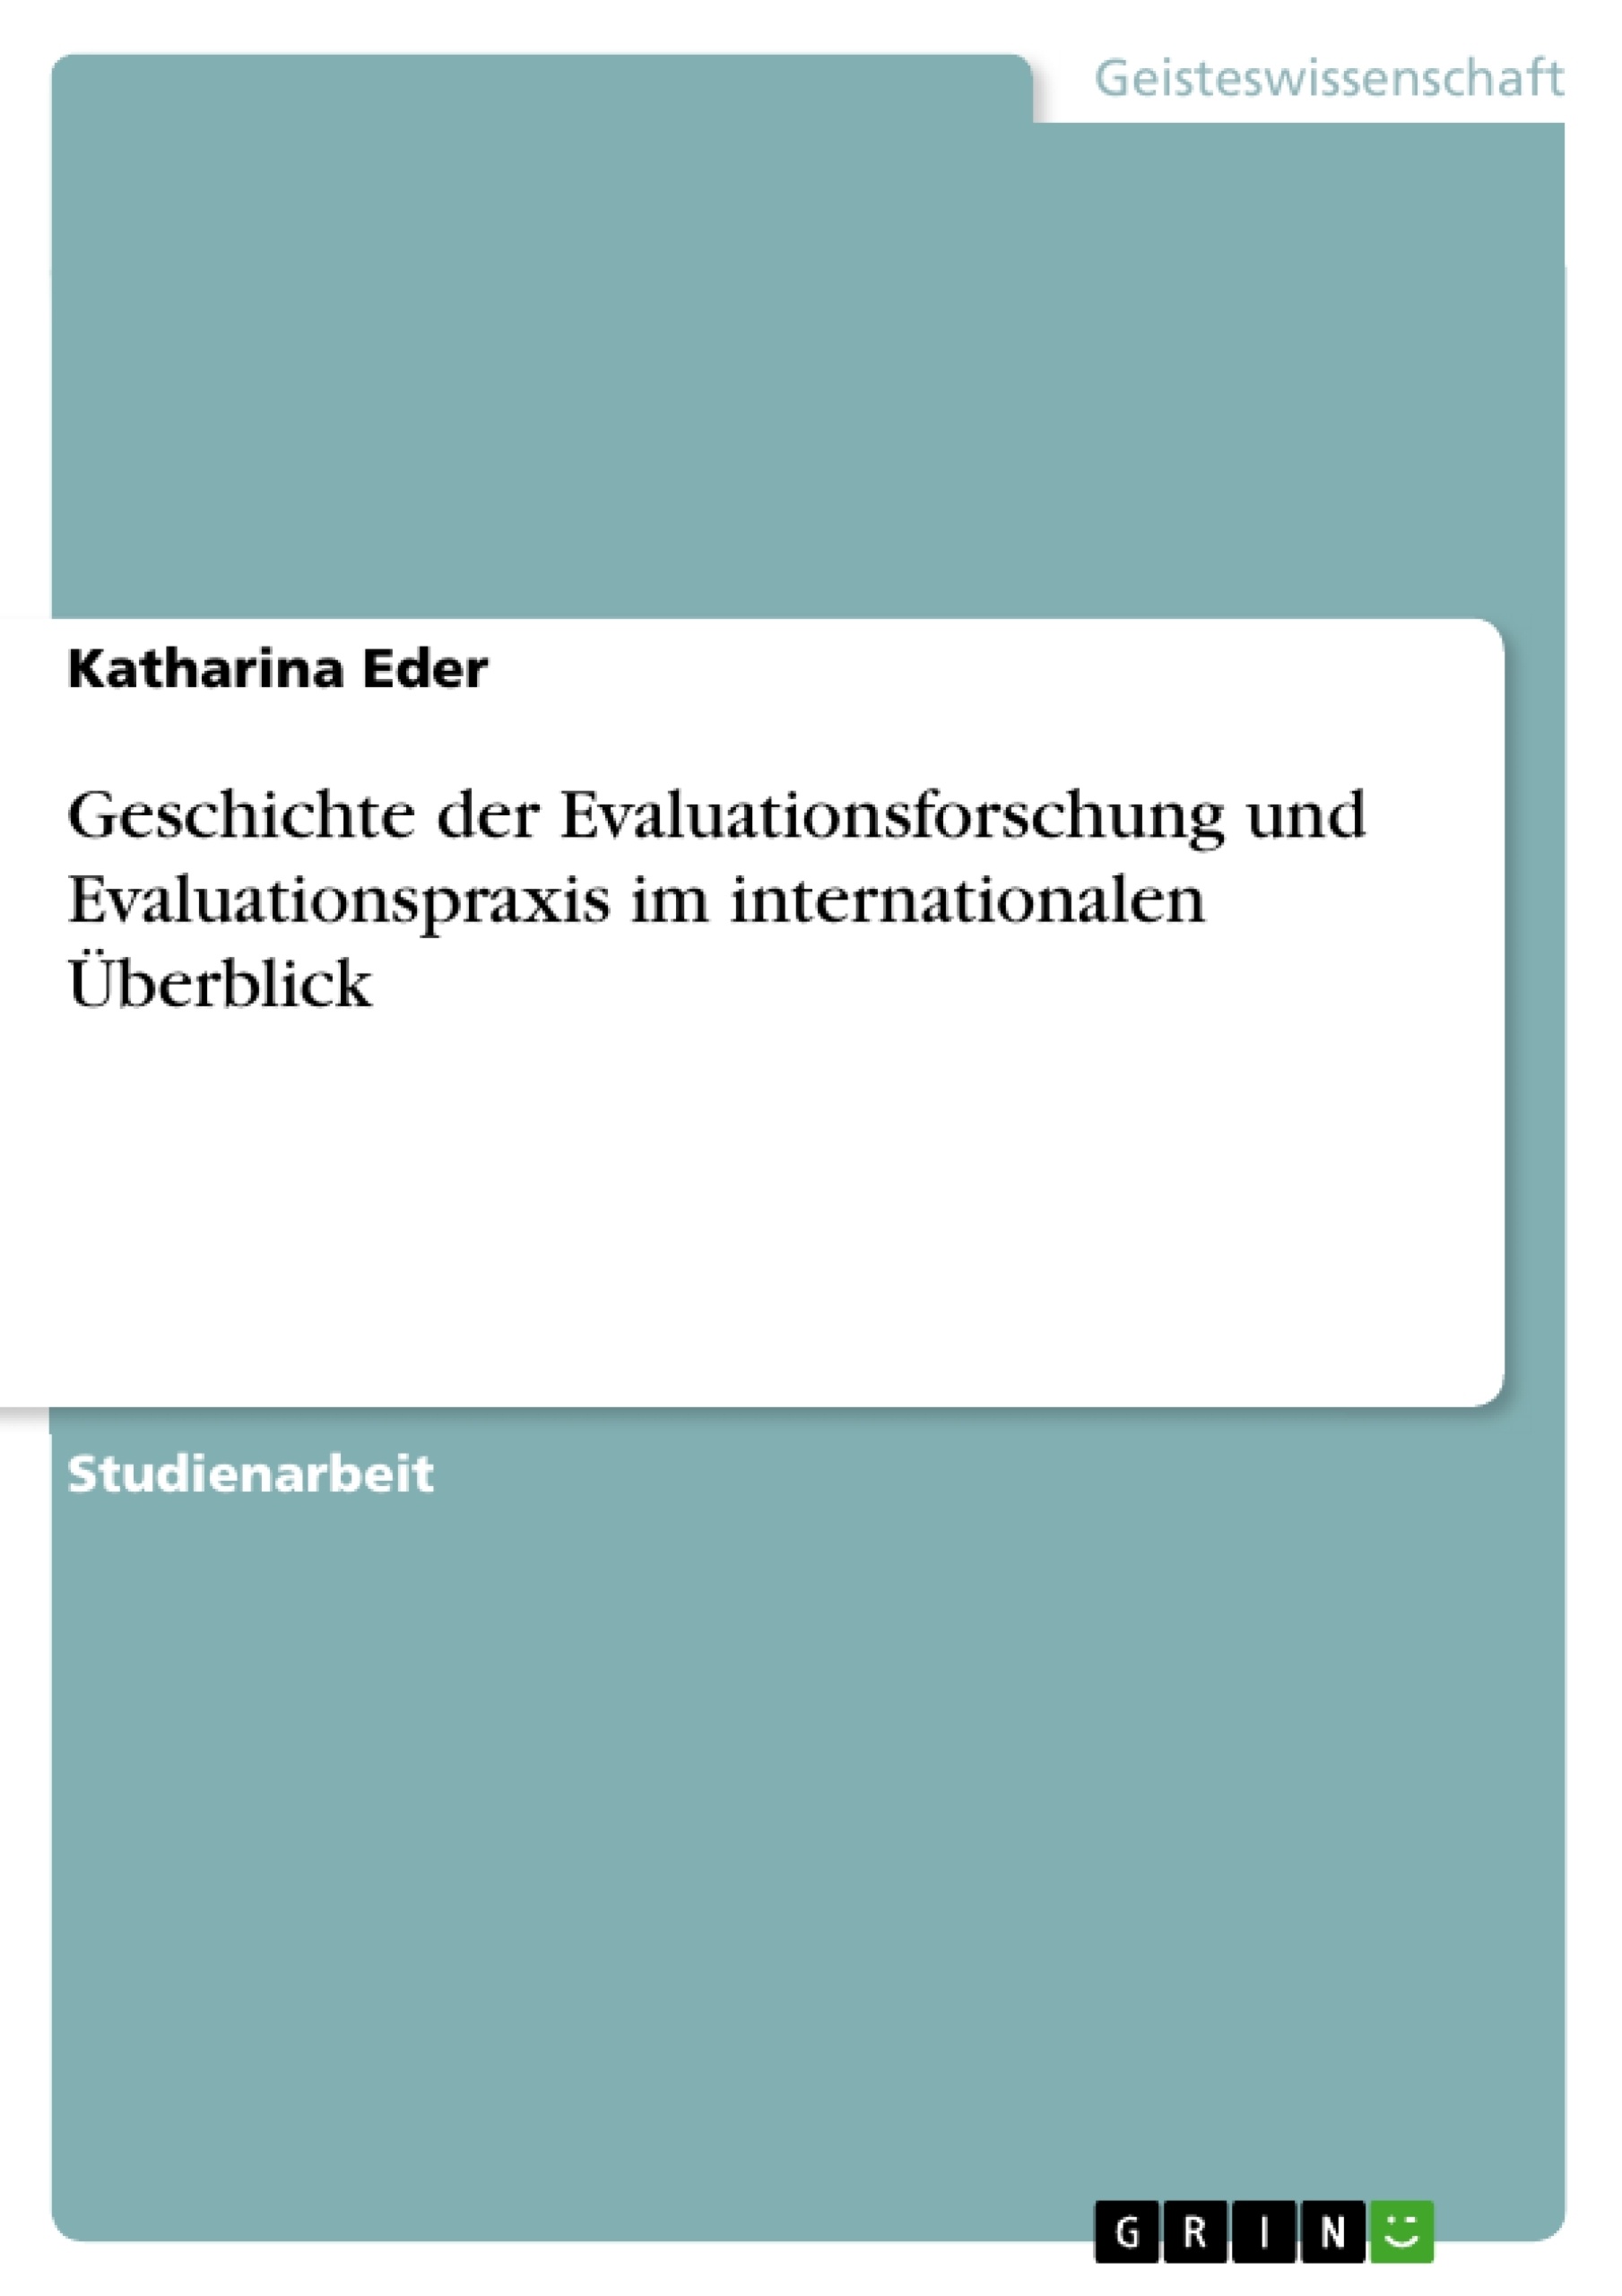 Title: Geschichte der Evaluationsforschung und Evaluationspraxis im internationalen Überblick